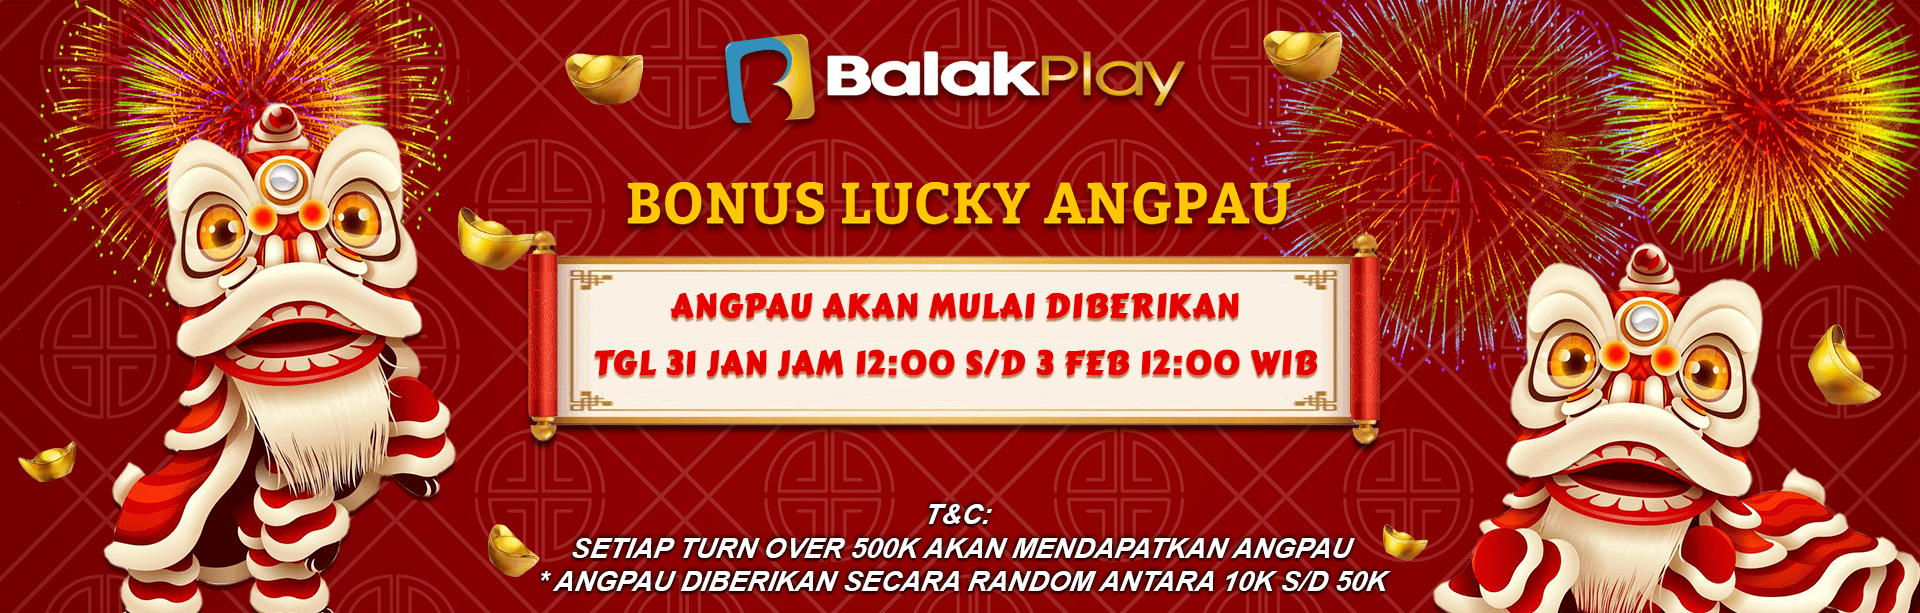 balakplay-bonus-lucky-angpao-desktop